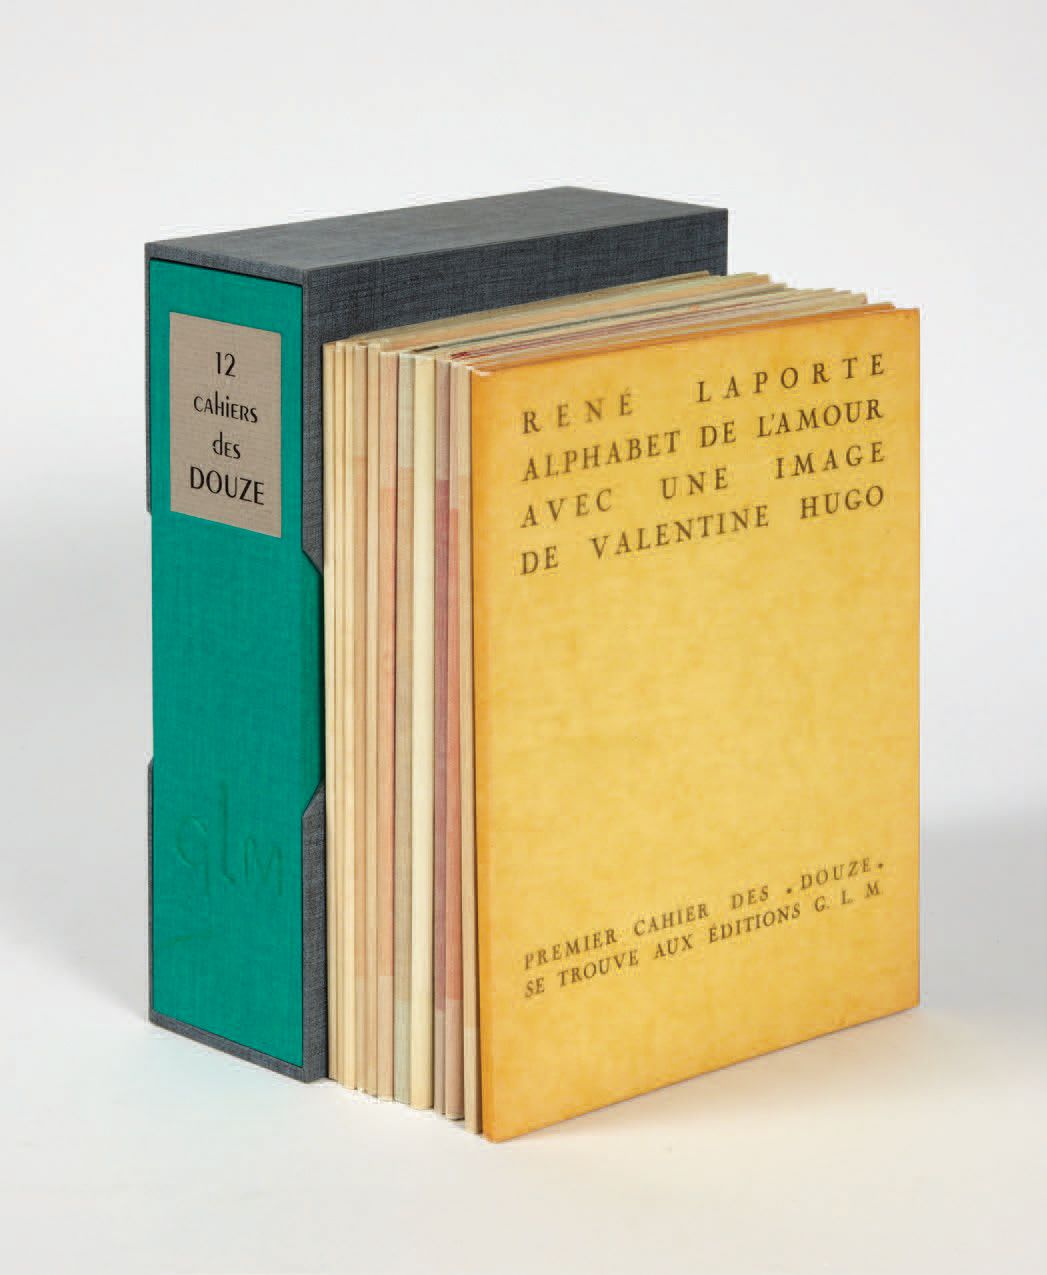 COLLECTION DES DOUZE. Paris, Éditions GLM, 1935-1938.
12 volumi in-8, spillati, &hellip;